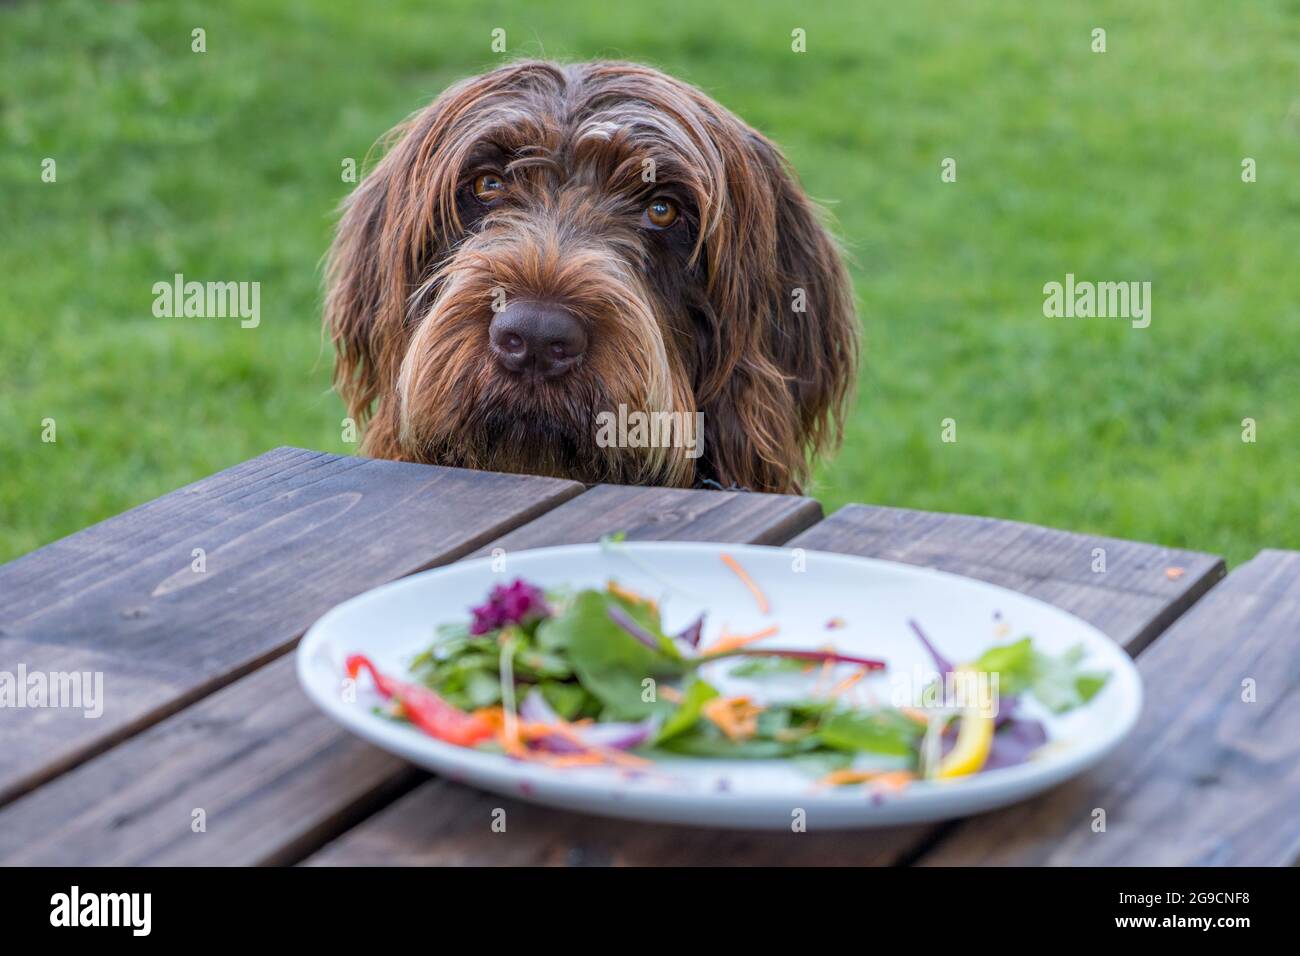 Ein Hund von Griffon Korthals mit einem bekledigenden oder schuldigen Blick. Ein Teller mit den Überresten eines Salats und kein Fleisch im Vordergrund. Stockfoto